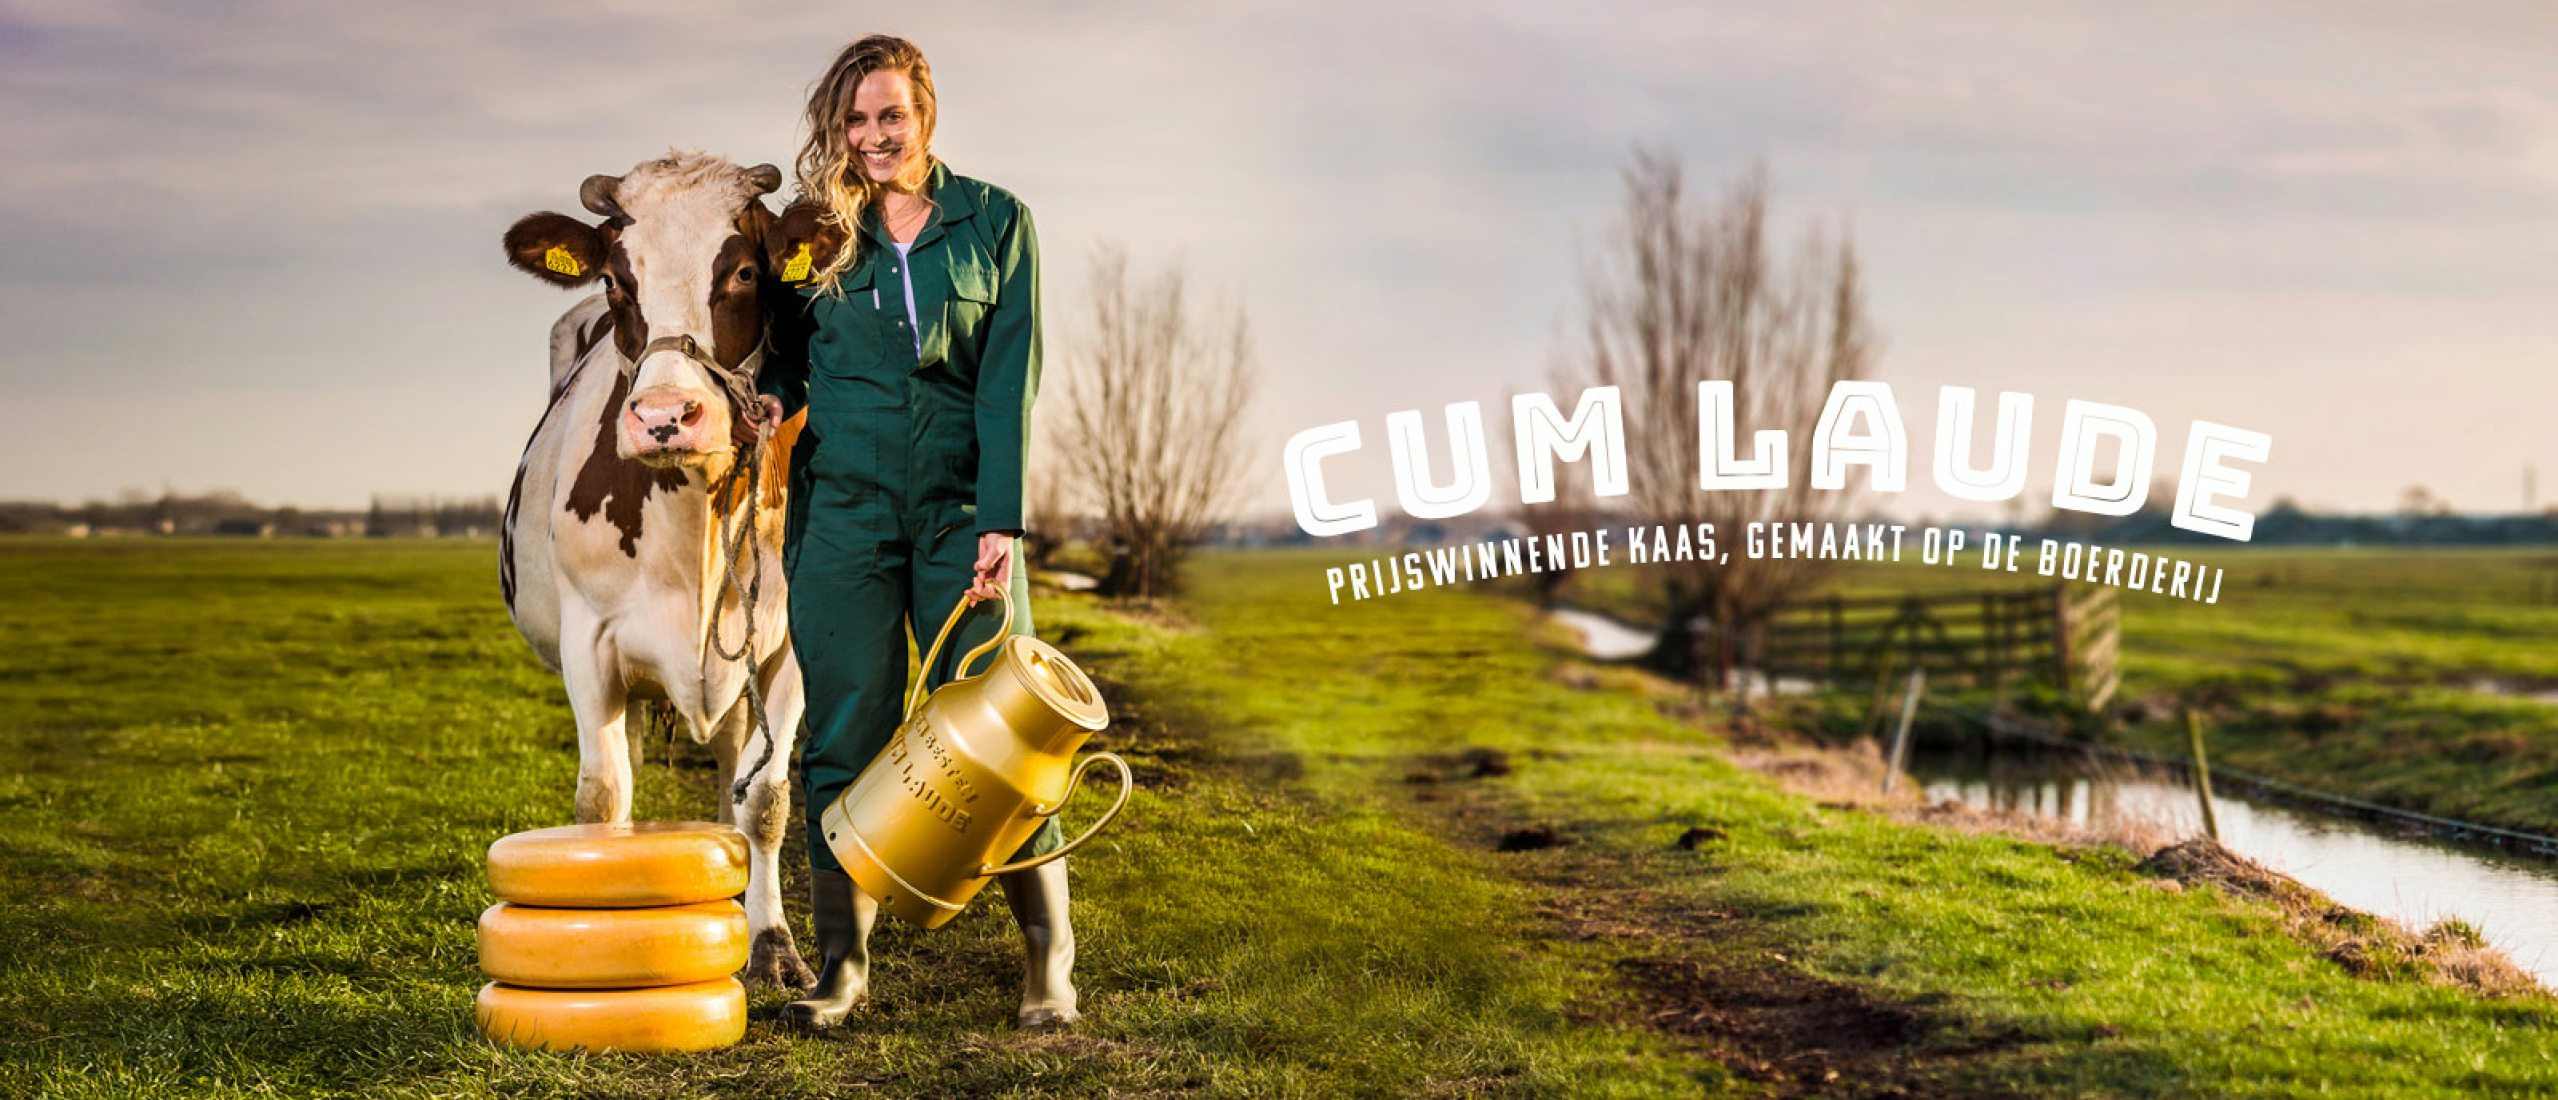 Fantastische prestaties van Onze Stoere Boeren op de Cum Laude Kaas Awards 2022